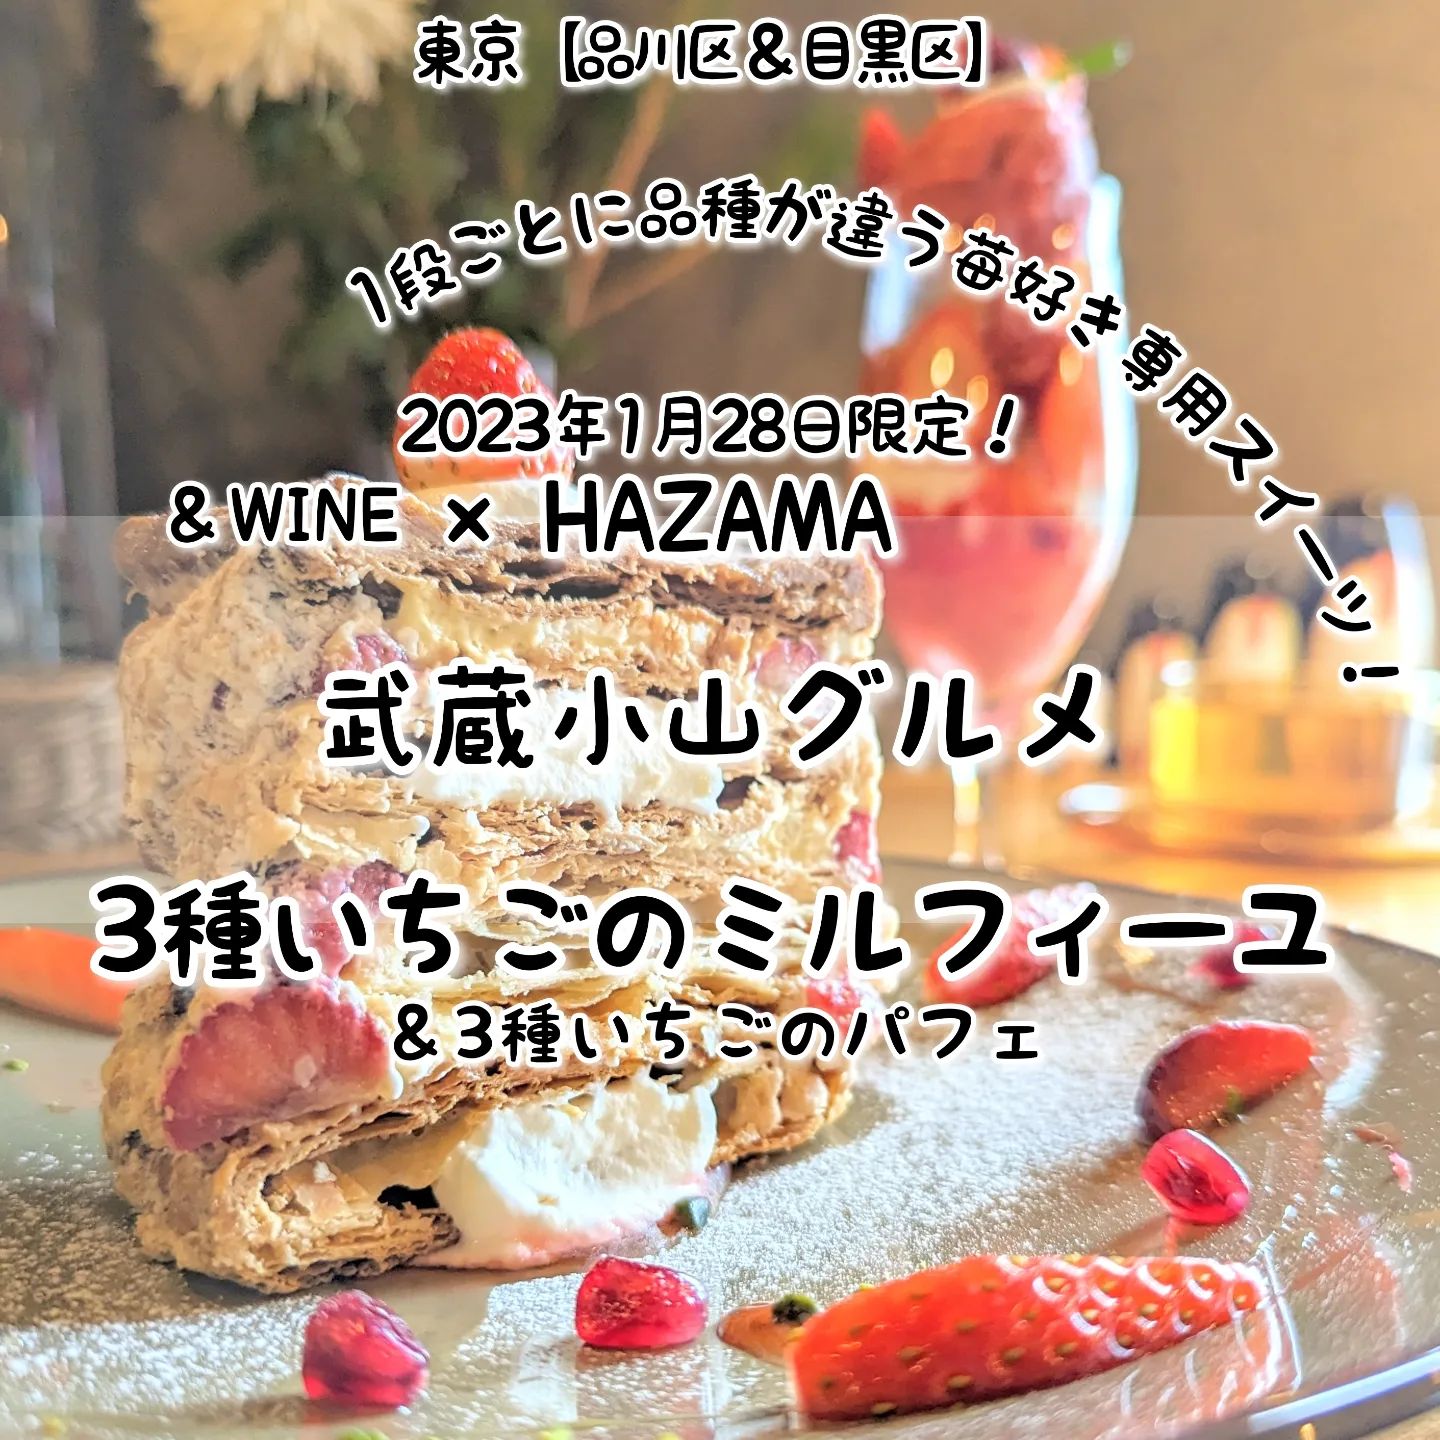 #武蔵小山グルメ情報 #hazama #3種いちごのミルフィーユ おもいで度－－☆－－ #侍猫度マイルド系－－☆－－スパイシー系あっさり系－－☆－－コッテリ系シンプル系－－☆－－ゴロゴロ系オールド系－－－☆－ニュー系3品種の苺を使ったボリューム系ミルフィーユが美味しい！3品種の苺、さがほのか、とちおとめ、あまおうを自家製パイ生地に一層ごとに1品種使いつつ、甘さ控えめなクリームと合わせたざっくりボリューム系のミルフィーユに仕上がっております！一緒にいただいた3種のいちごパフェもいろんないちごの味が楽しめる美味しいやつとなっおります！こちらは、2023年1月28日限定の「HAZAMA」と「＆WINE」のコラボメニューでございます。HAZAMAとは、2022年2月から＆WINEの店舗でコラボ営業している大人のスイーツ屋でございまして、今のところ毎月1回くらいのペースで、季節のスイーツを味わうことができる激レアなお店でございますね。店内には、優しいお姉さんがおりまして、メニューの解説を聞きつつスイーツをいただけますので、初めての方もお一人様も安心して入れるお店でございます。来月の開催日は、まだ未定のようなので、大人のスイーツが好きな方はインスタの告知を要チェックでございますね。HAZAMA@hazama_ur_space場所は、武蔵小山駅から26号線を目黒郵便局方面へ進んで100円ローソン手前にございますミチノサキビルの6階でございます。ルリューユニークってパン屋さんの入っているビルでございますね。【侍猫を応援】インスタだけでなくメインサイトも沢山見ていただくと侍猫がさらに元気になって武蔵小山グルメをもっと食べ歩きます！（追加画像＆地図あり！）※メインサイトへの移動はプロフィールのURLが簡単！→ @musashikoyama.news →https://musashikoyama.samuraicat.jp/ 【侍猫に連絡】気になるお店や新メニュー情報などお気軽にDMください！気まぐれに投稿いたします！もちろんお仕事の依頼も受付中でございます。 #武蔵小山 #武蔵小山グルメ #武蔵小山カフェ #西小山 #戸越銀座 #不動前 #碑文谷 #戸越 #中延 #荏原中延 #目黒本町 #品川区 #品川区グルメ #目黒区 #目黒区グルメ #東京 #東京グルメ #東京ランチ#musashikoyama #tokyofood #japan #japanesefood #武蔵小山食事 #武蔵小山スイーツ #東京スイーツ #スイーツ